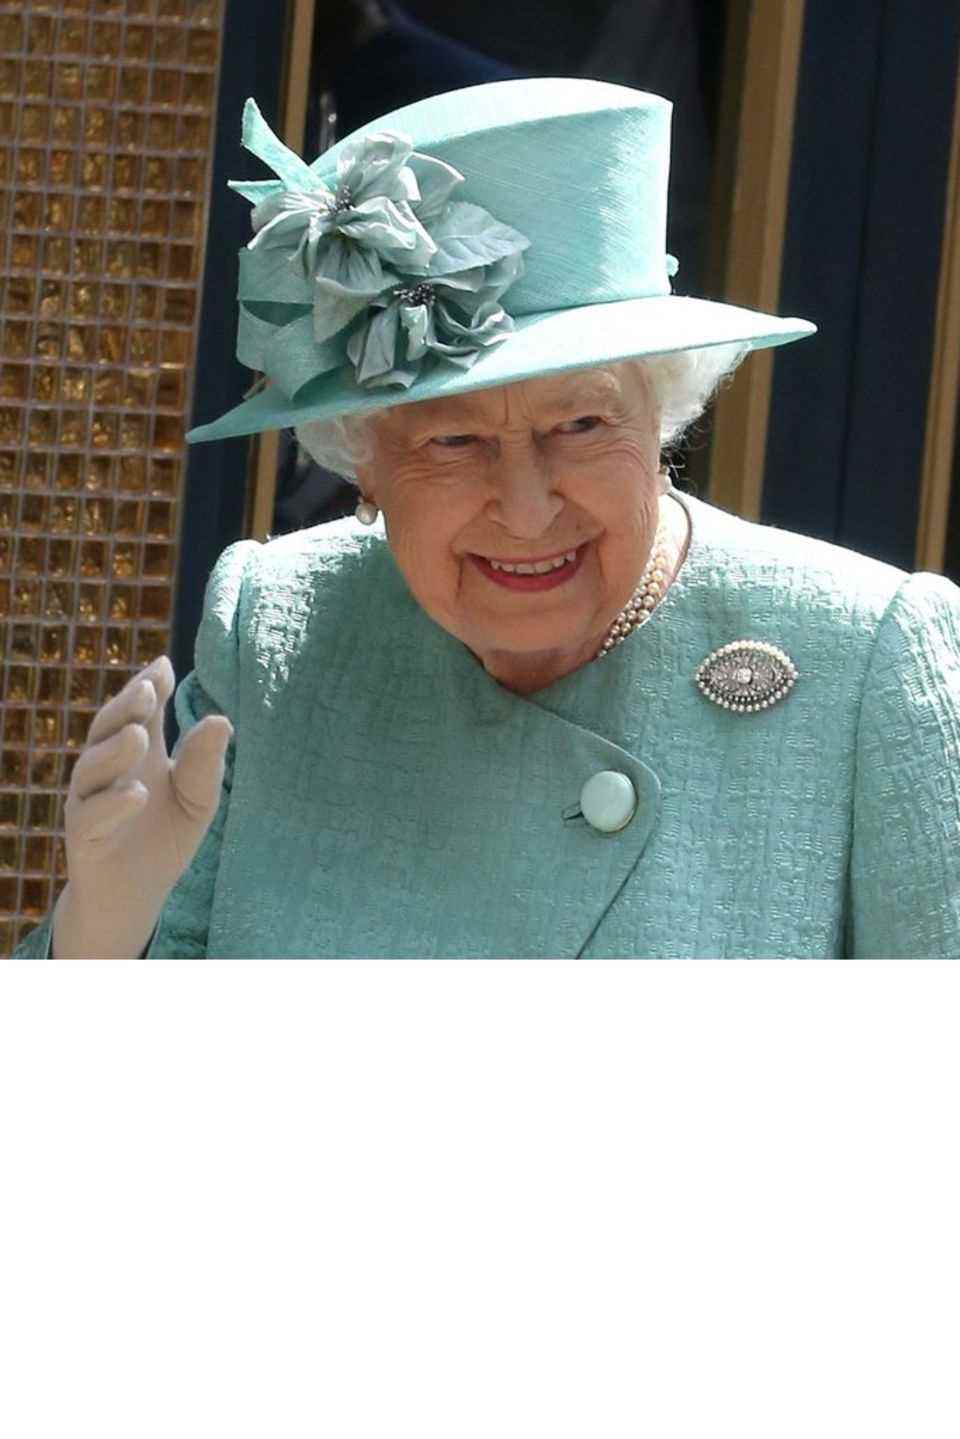 Queen Elizabeth II. zelebriert Anfang Juni ihr Thronjubiläum mit Feierlichkeiten.